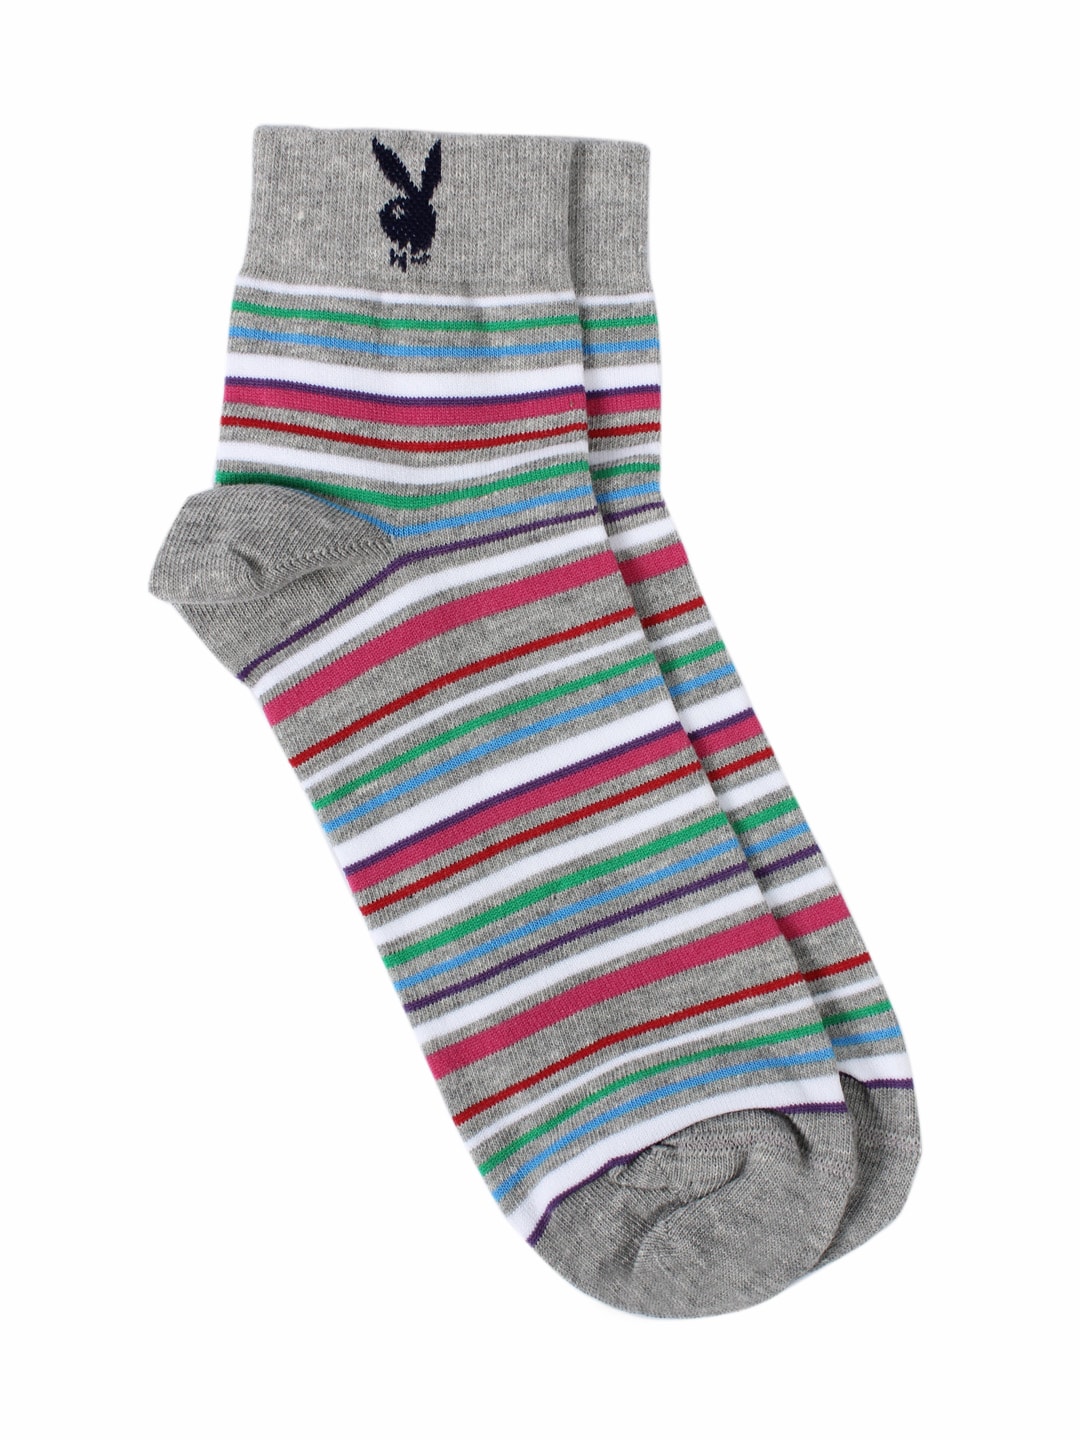 Playboy Men Multi Coloured Socks